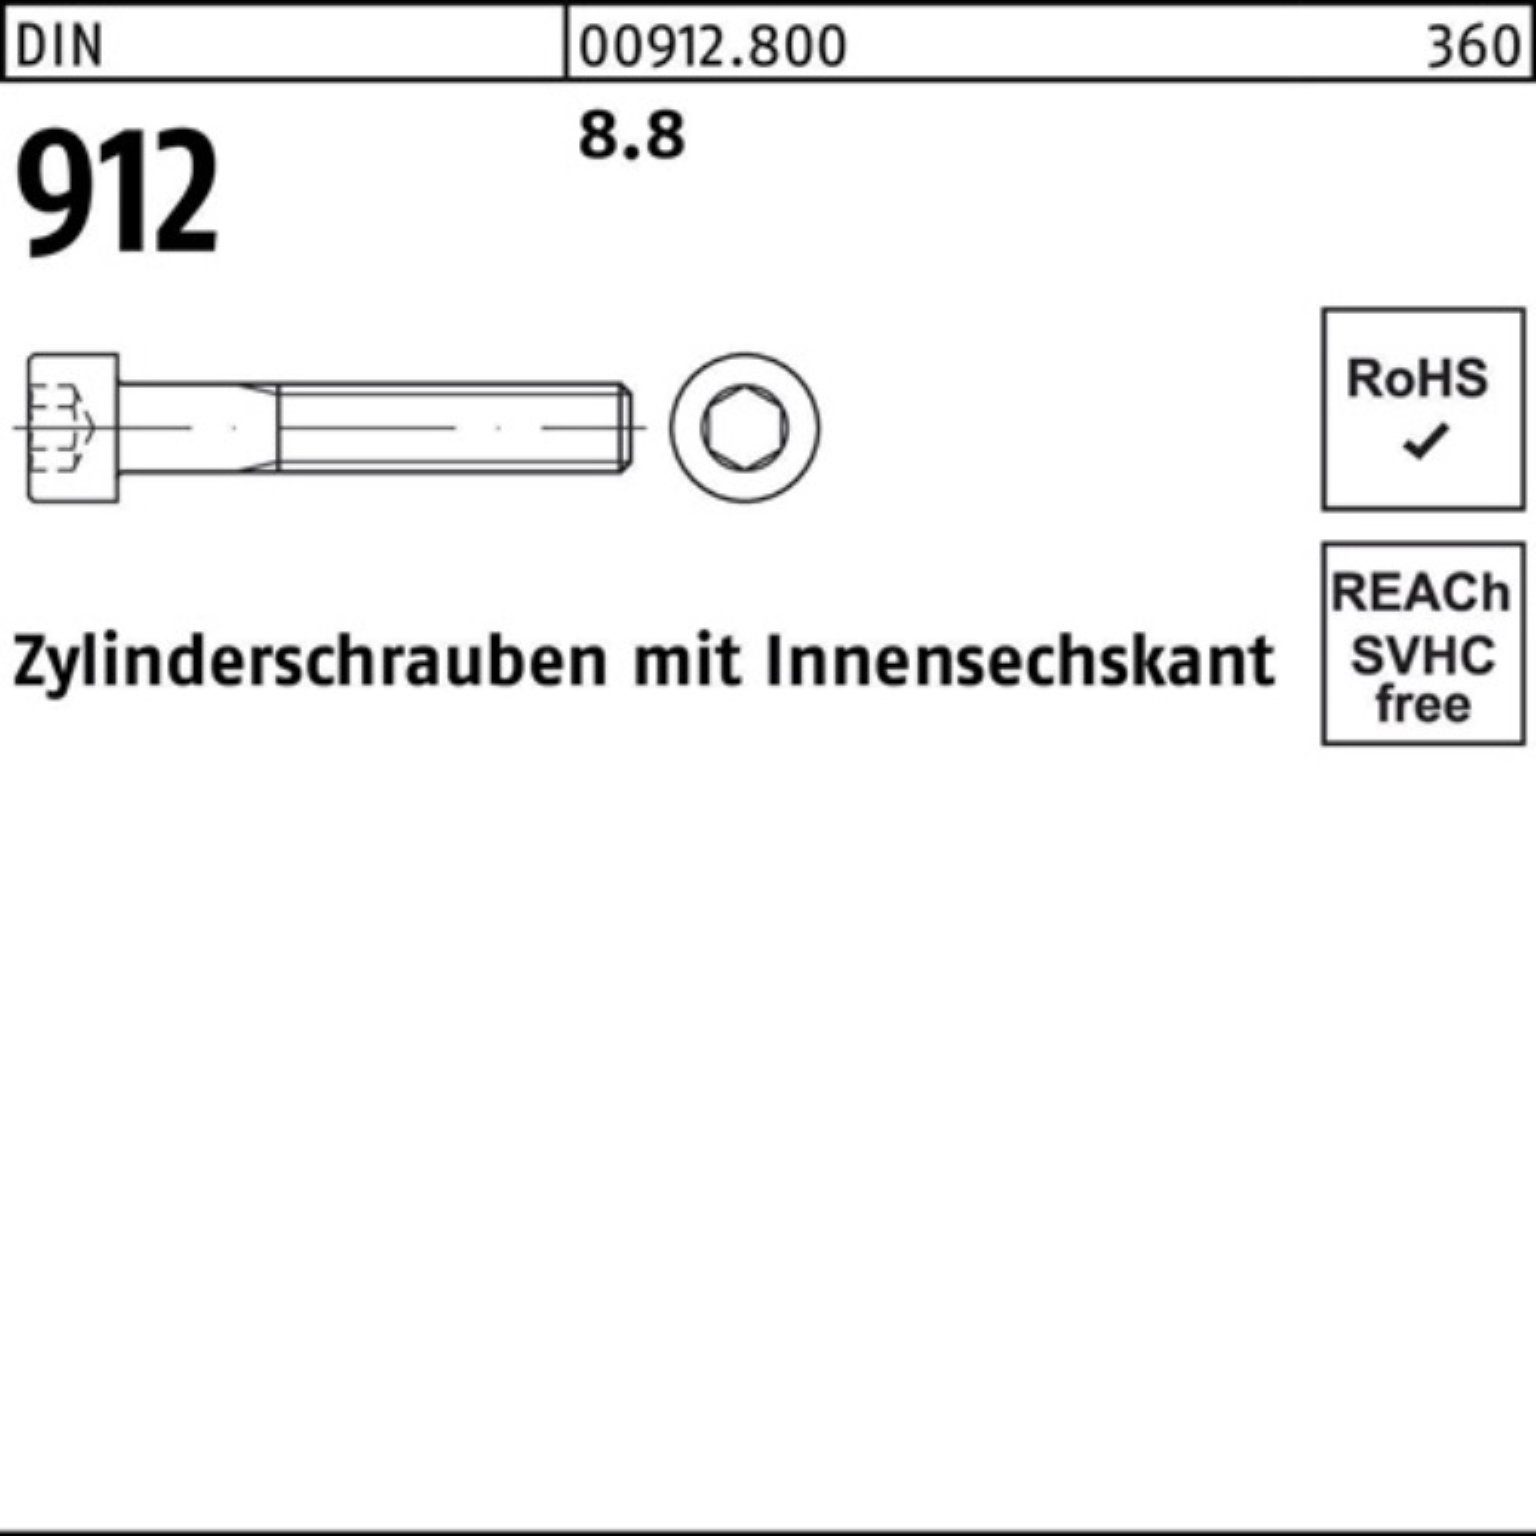 DI Stück Reyher Pack Innen-6kt DIN Zylinderschraube M20x 100er 912 580 Zylinderschraube 1 8.8